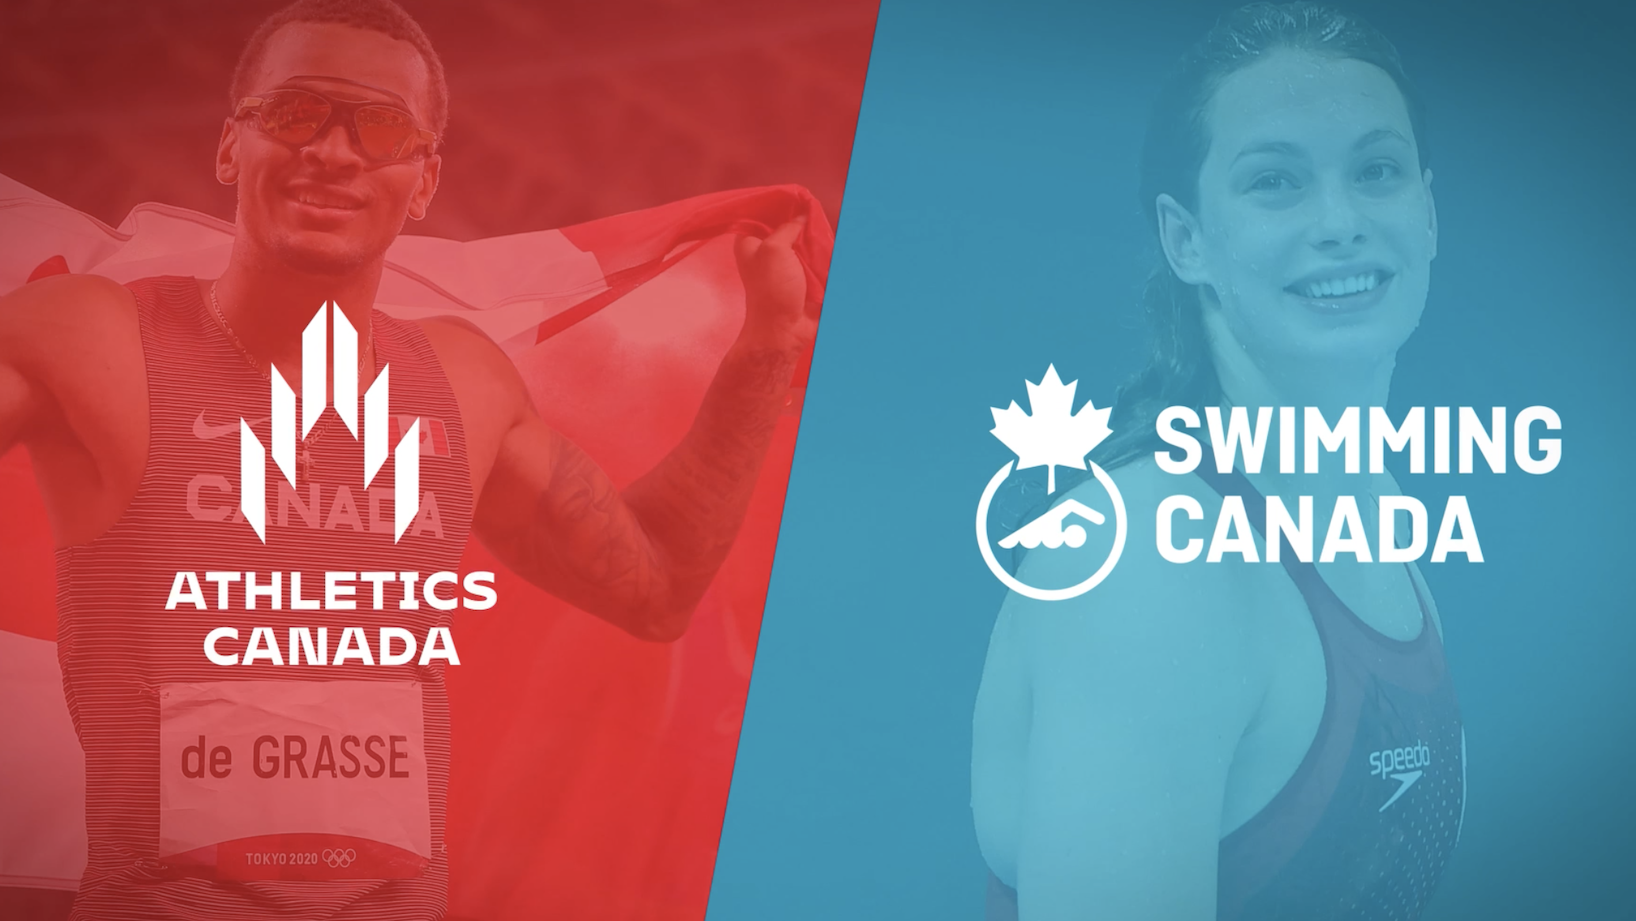 Athletics Canada e Swimming Canada in partnership per un progetto di marketing comune. Bell la prima azienda ad investire